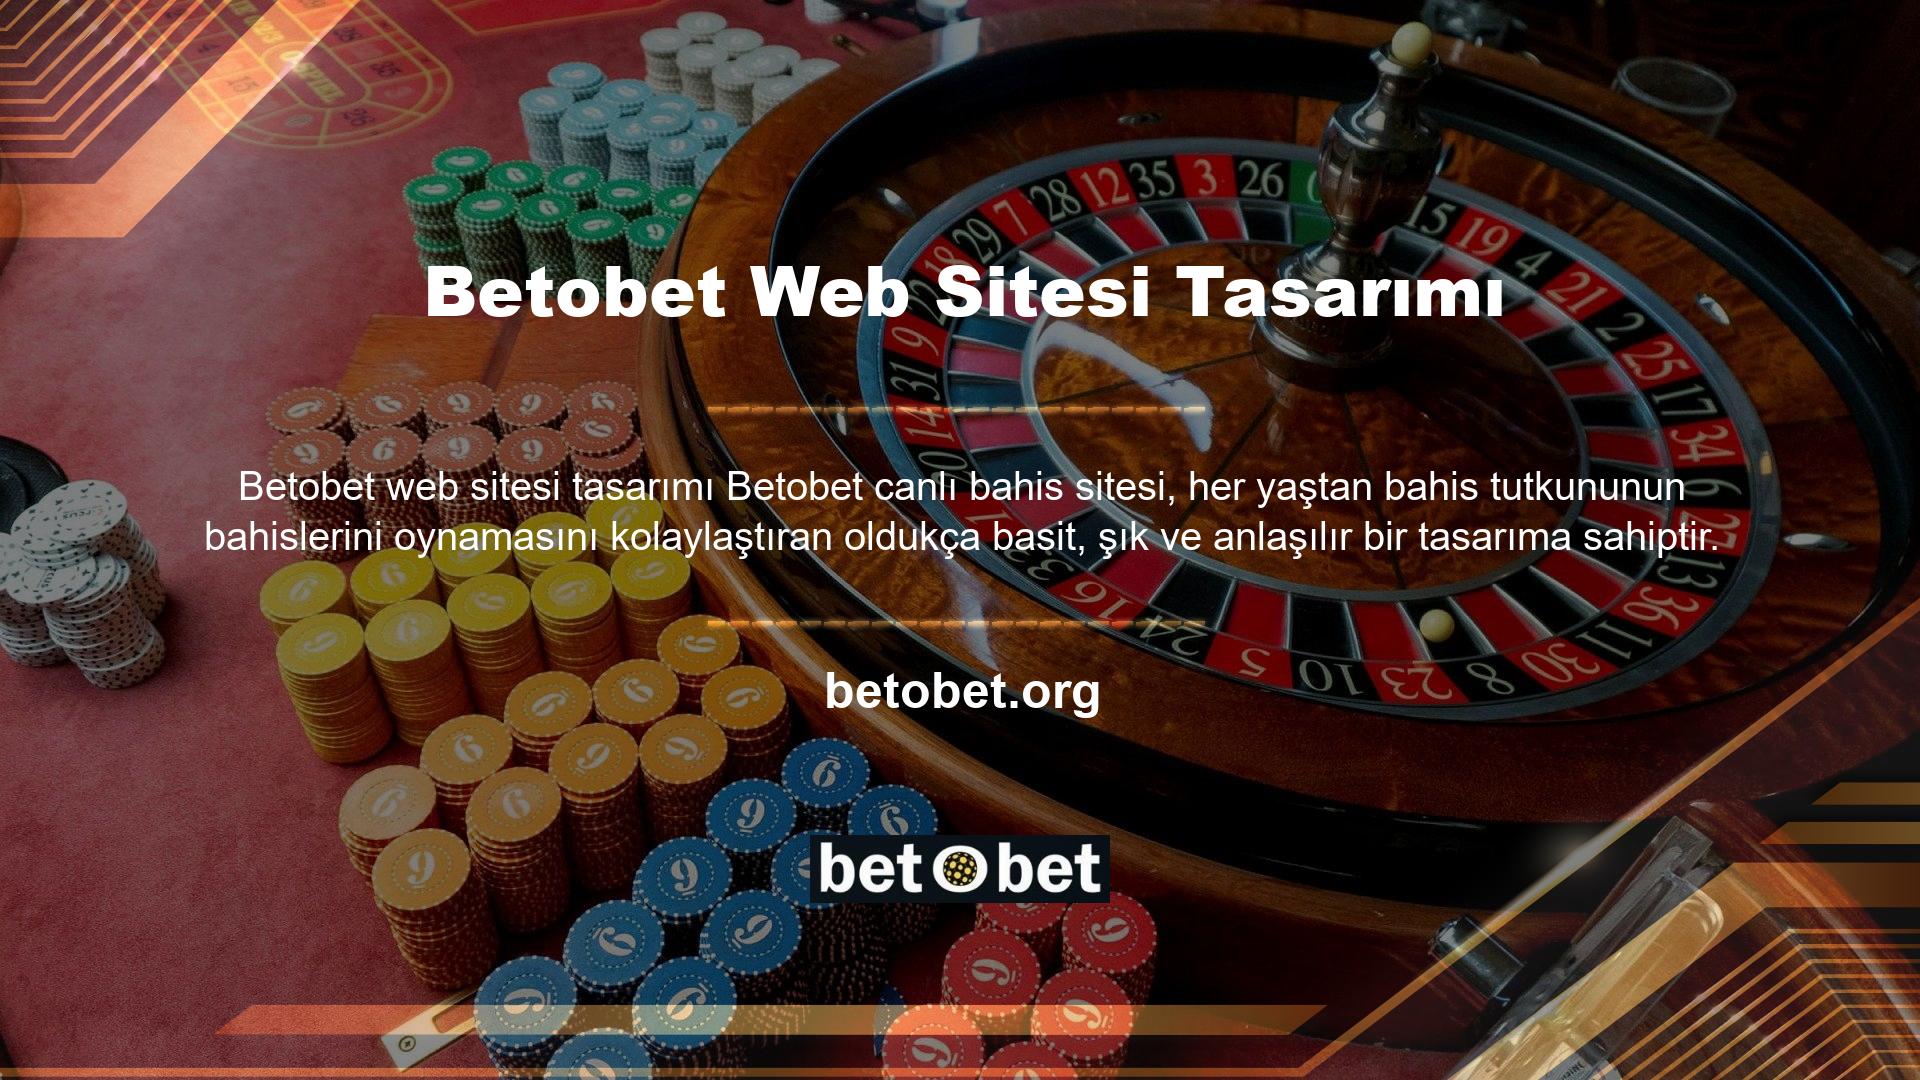 Betobet web sitesi yönetim ekibinin oyun alanında oldukça donanımlı ve tecrübeli olduğunu da belirtmeliyiz